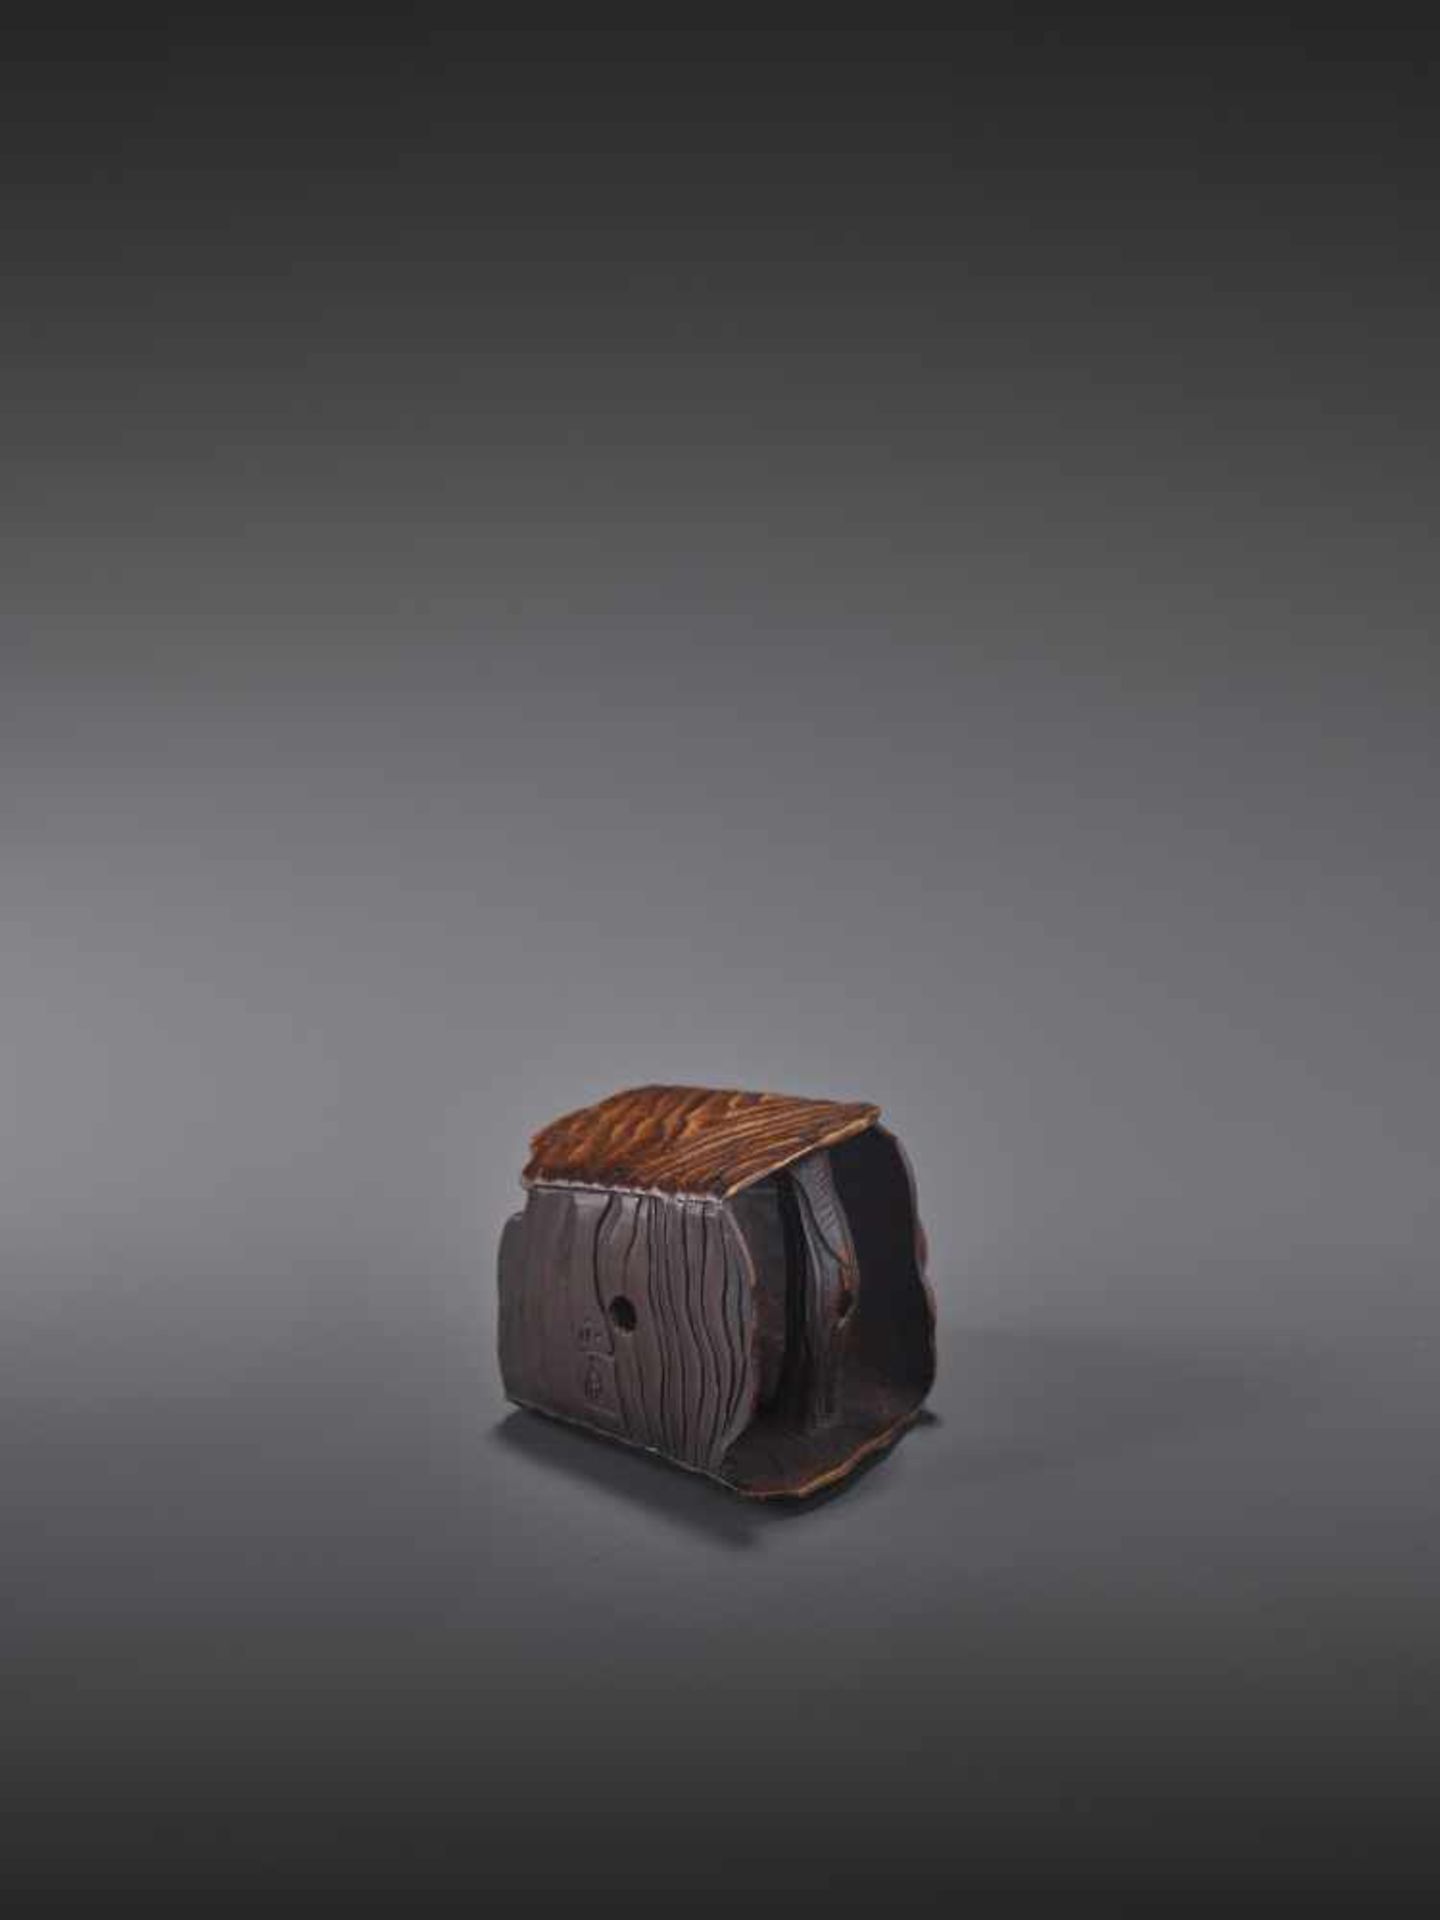 A FINE WOOD NETSUKE OF A SNAIL ON A BUCKET BY MASANAO By Masanao, wood netsukeJapan, Ise-Yamada, - Image 12 of 13